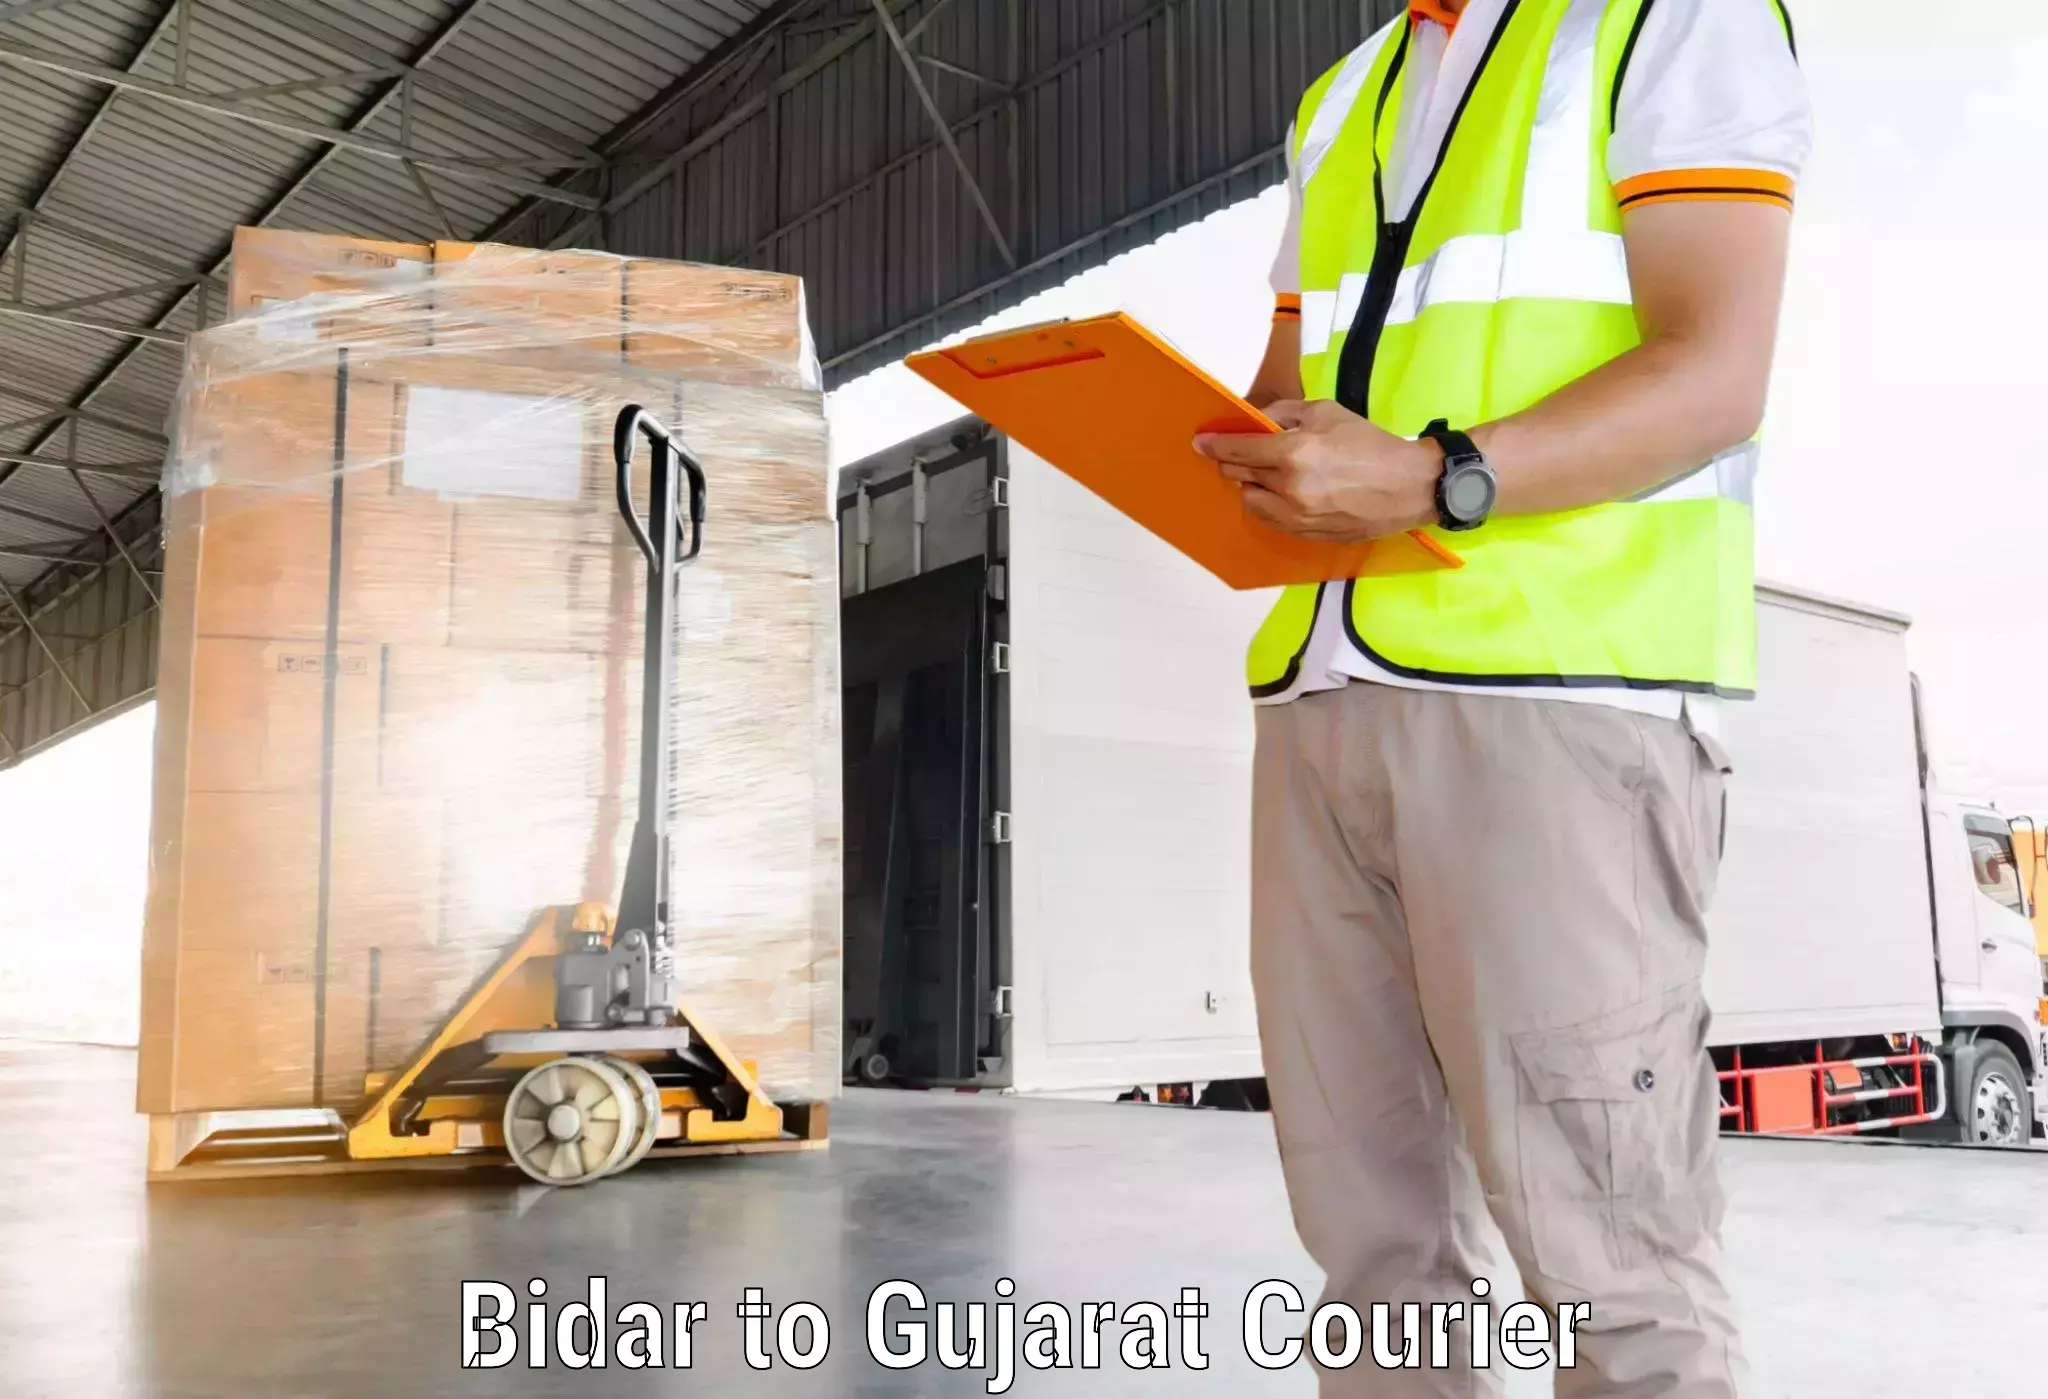 User-friendly delivery service Bidar to Gujarat